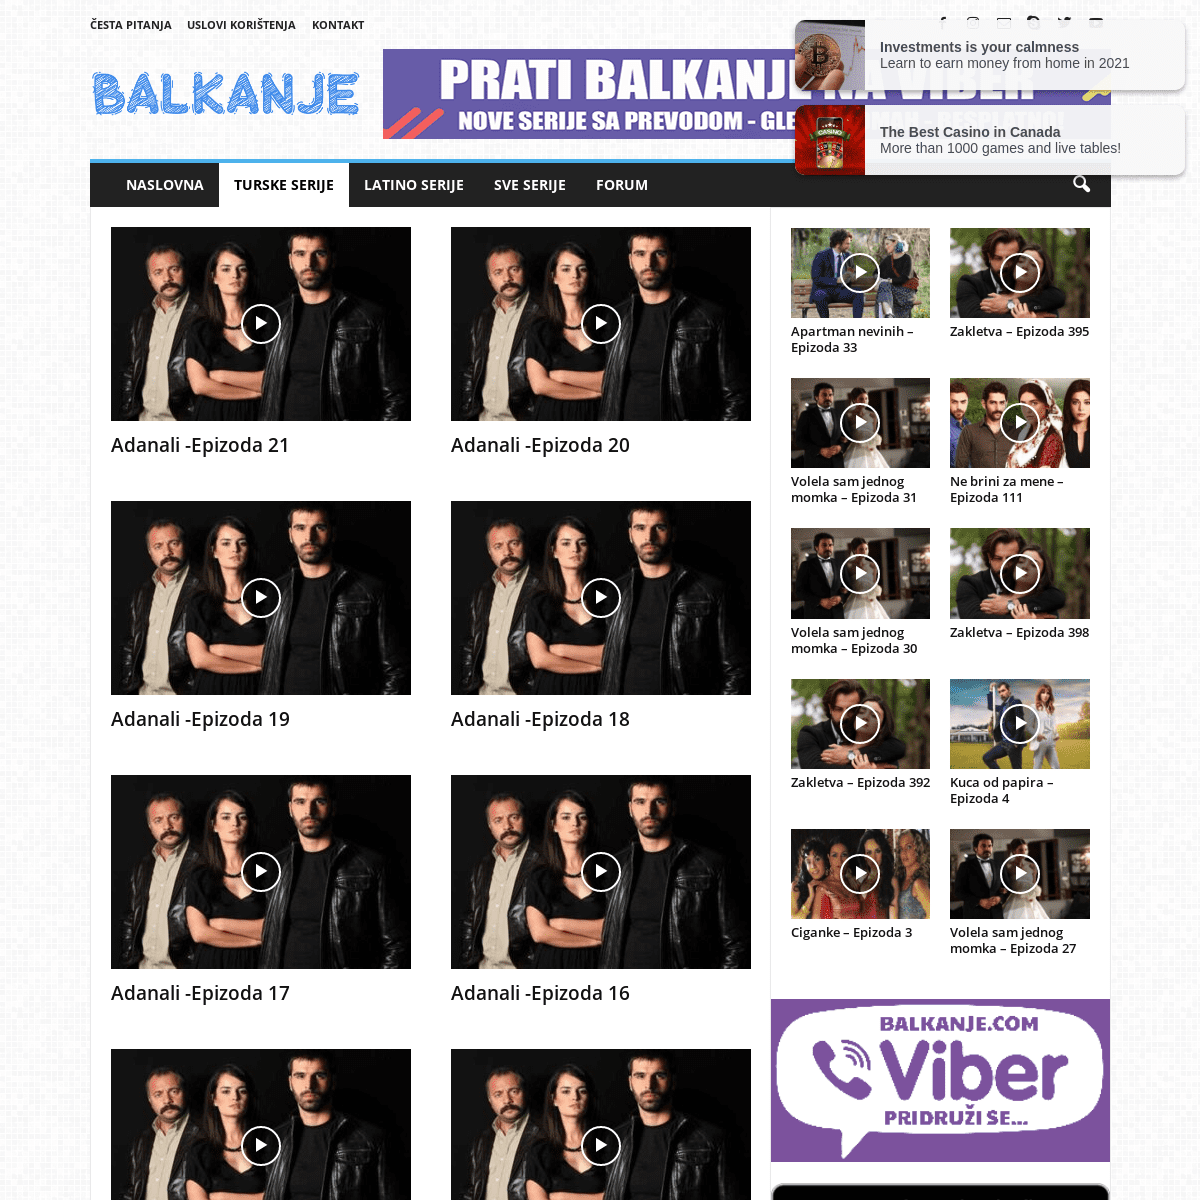 A complete backup of https://balkanje.com/turske-serije/adanali-2008/